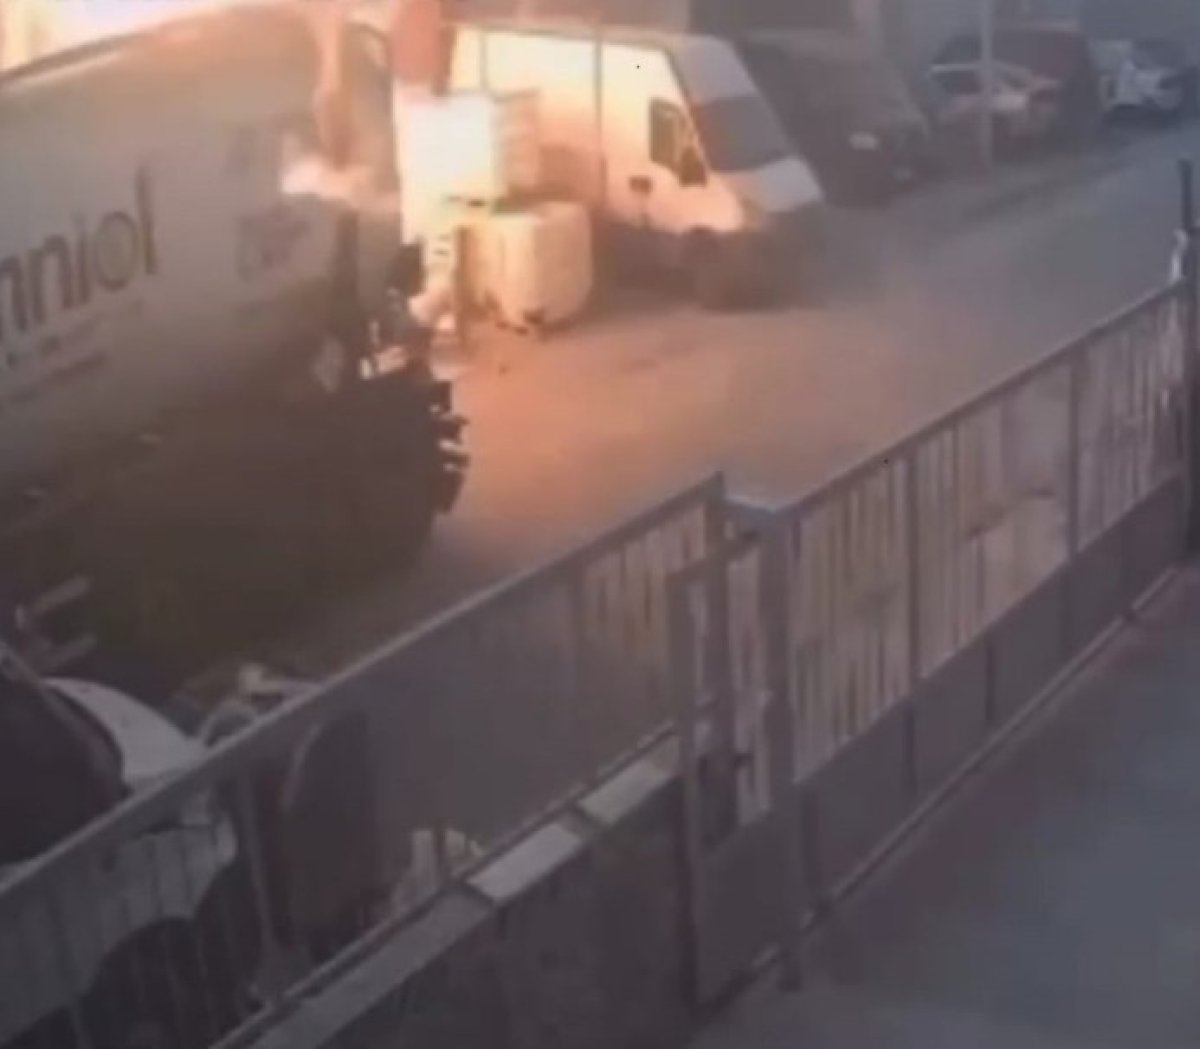 İzmir’de 1 kişinin öldüğü kimya imalathanesindeki patlama anı kamerada #1